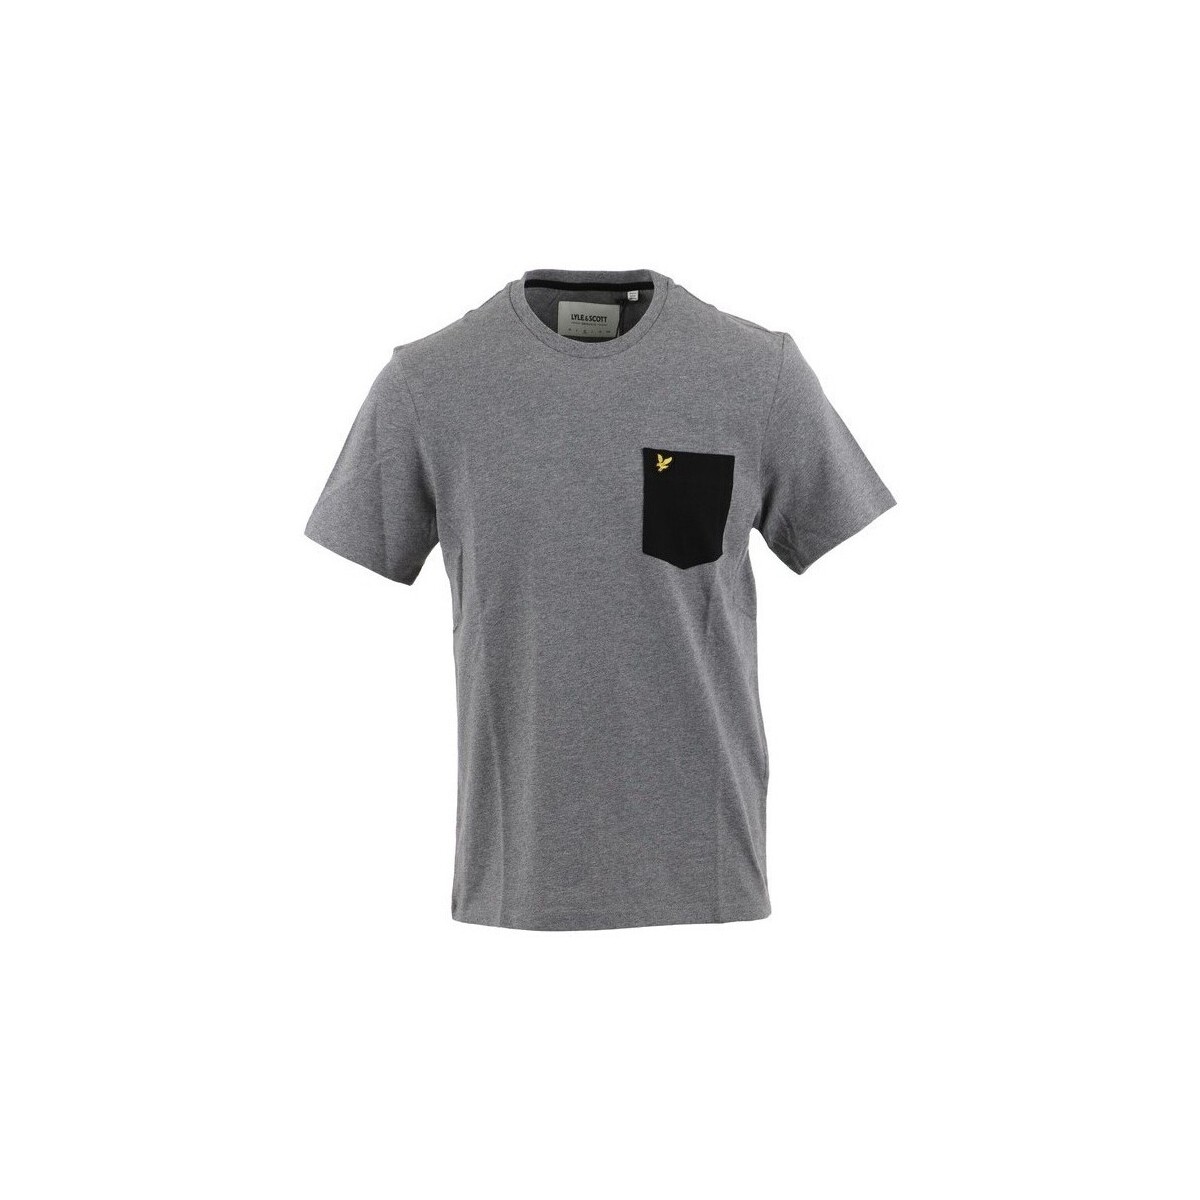 textil Hombre Camisetas manga corta Lyle & Scott T-shirt  Contrast Pocket Gris